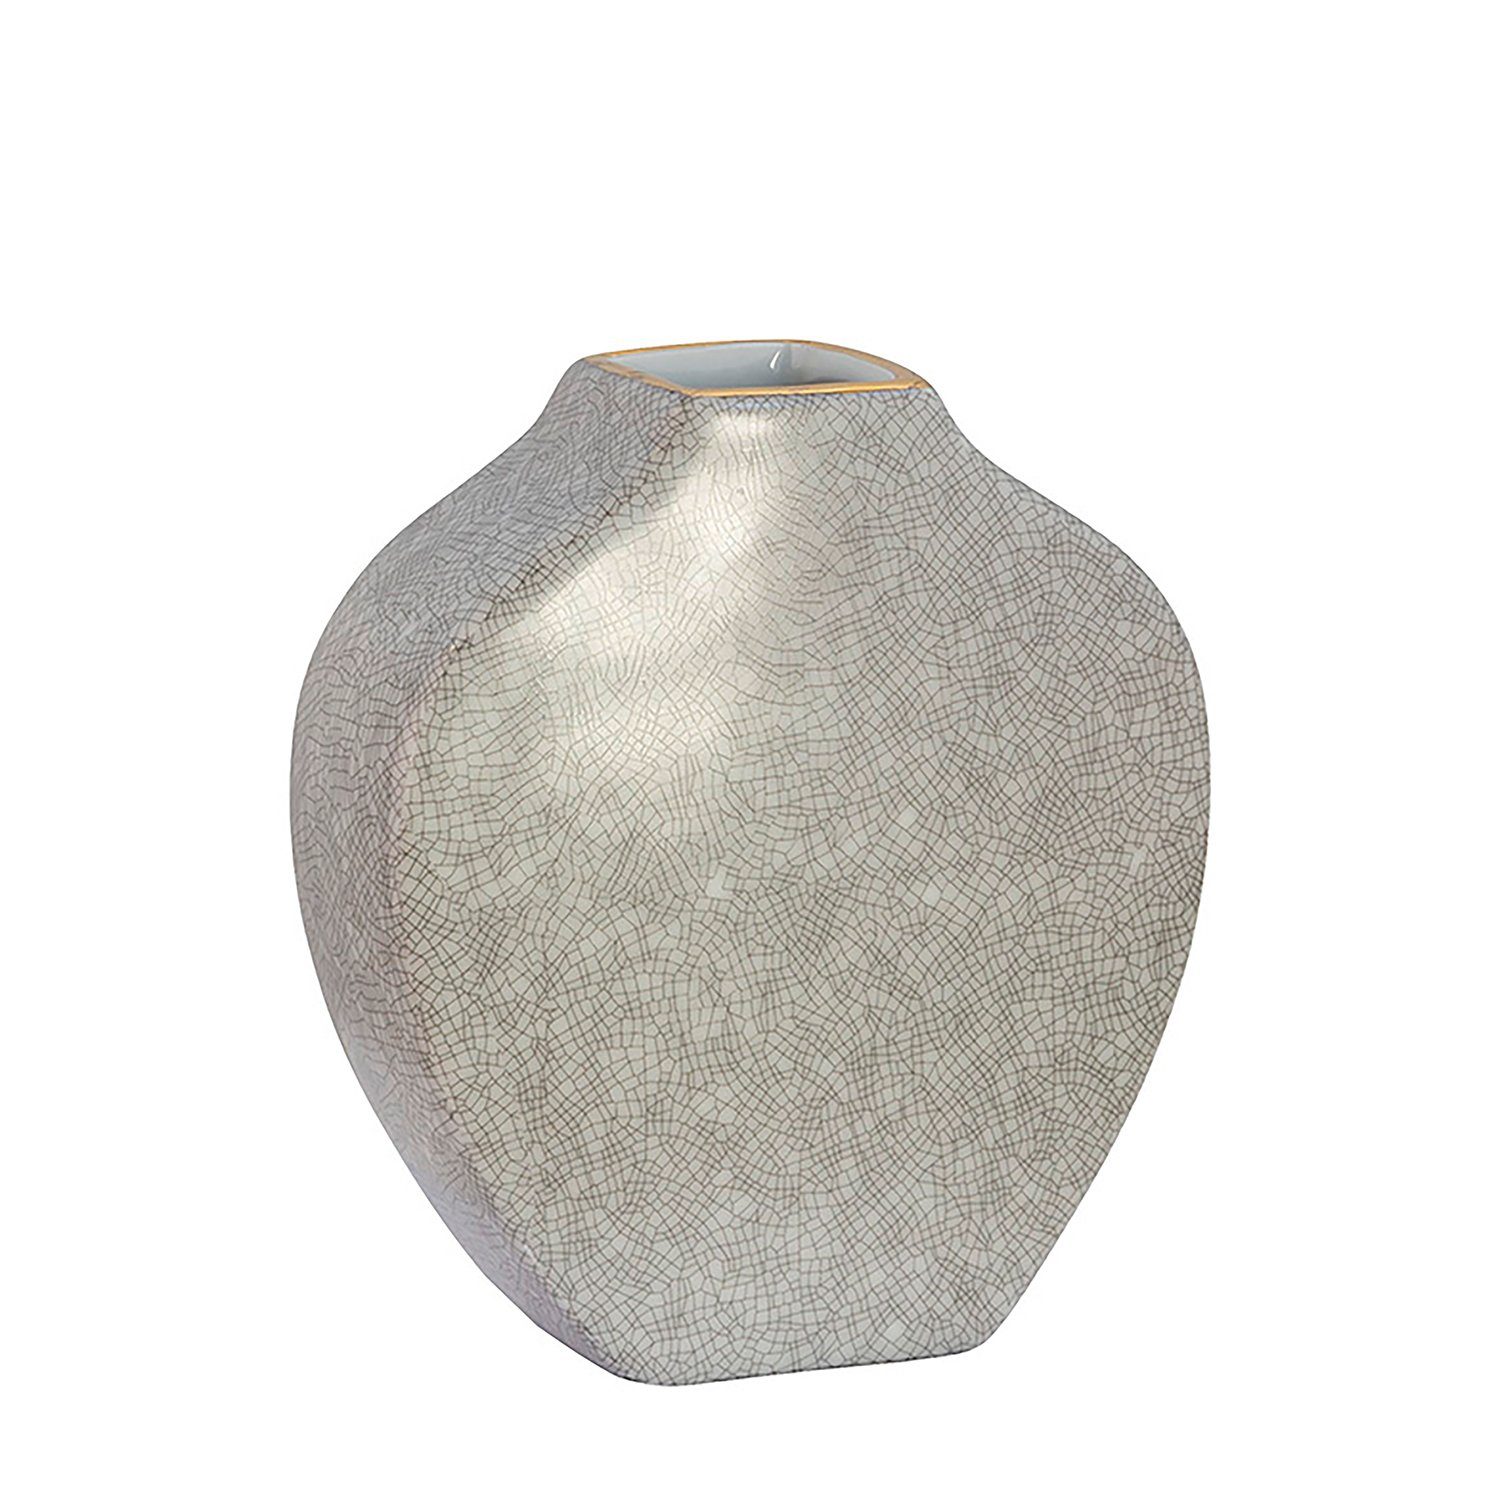 Fink Dekovase Vase MINTA - hellgrau - Porzellan - H.17,5cm x B.15cm x T.6cm, Handbemalter goldfarbener Rand - Durchmesser Öffnung ca. 4x4,5 cm